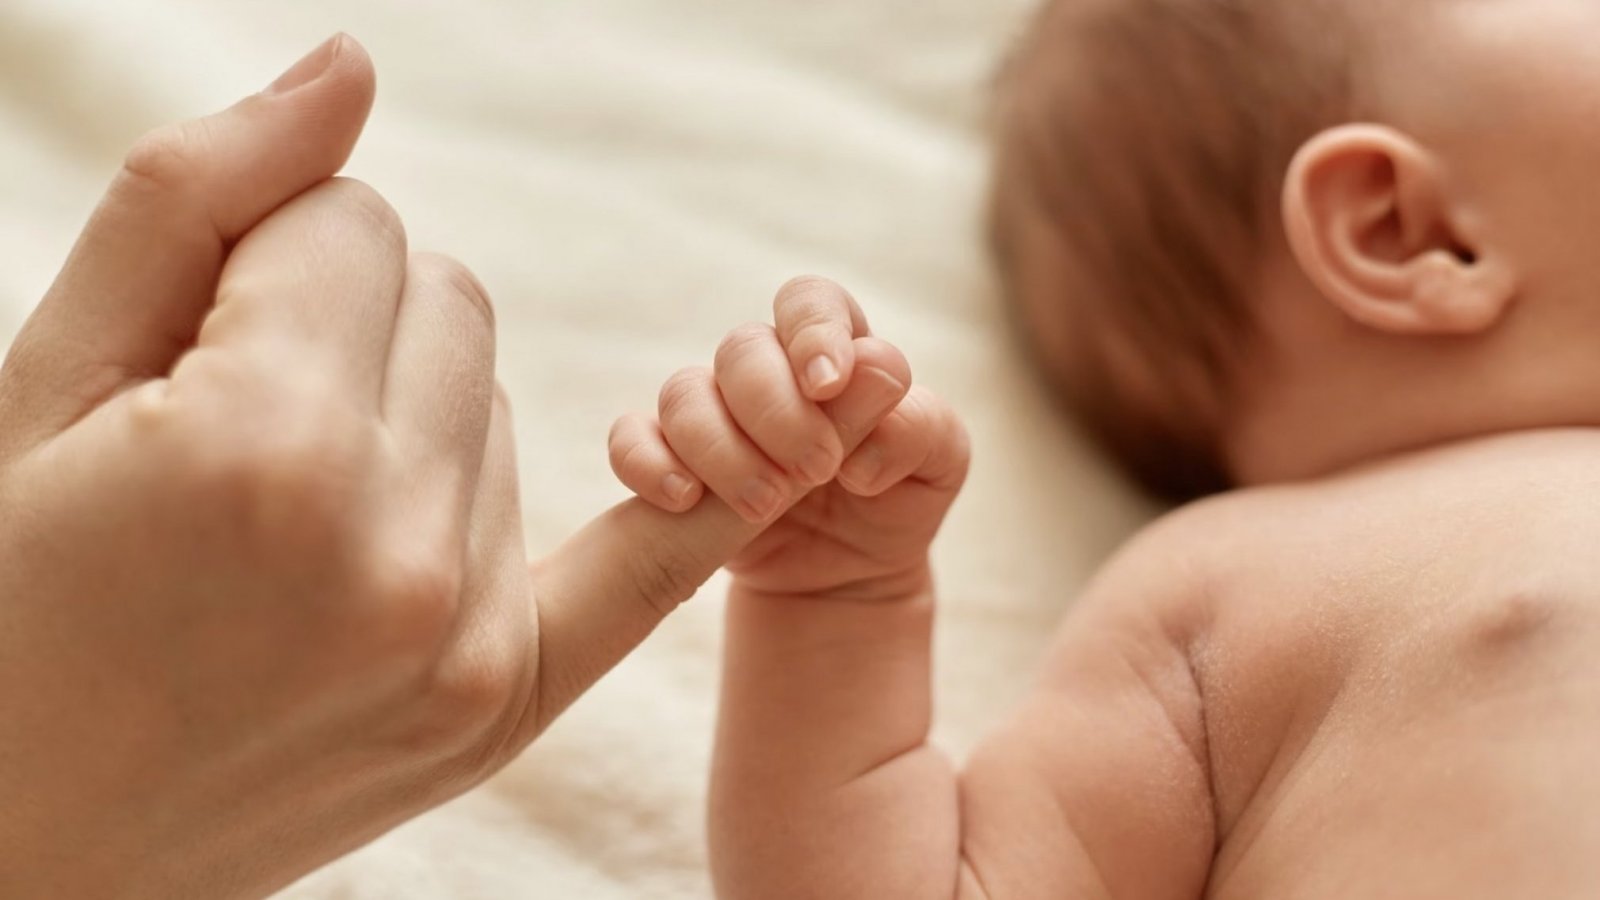 Mano de un bebé agarrando el dedo de un adulto.